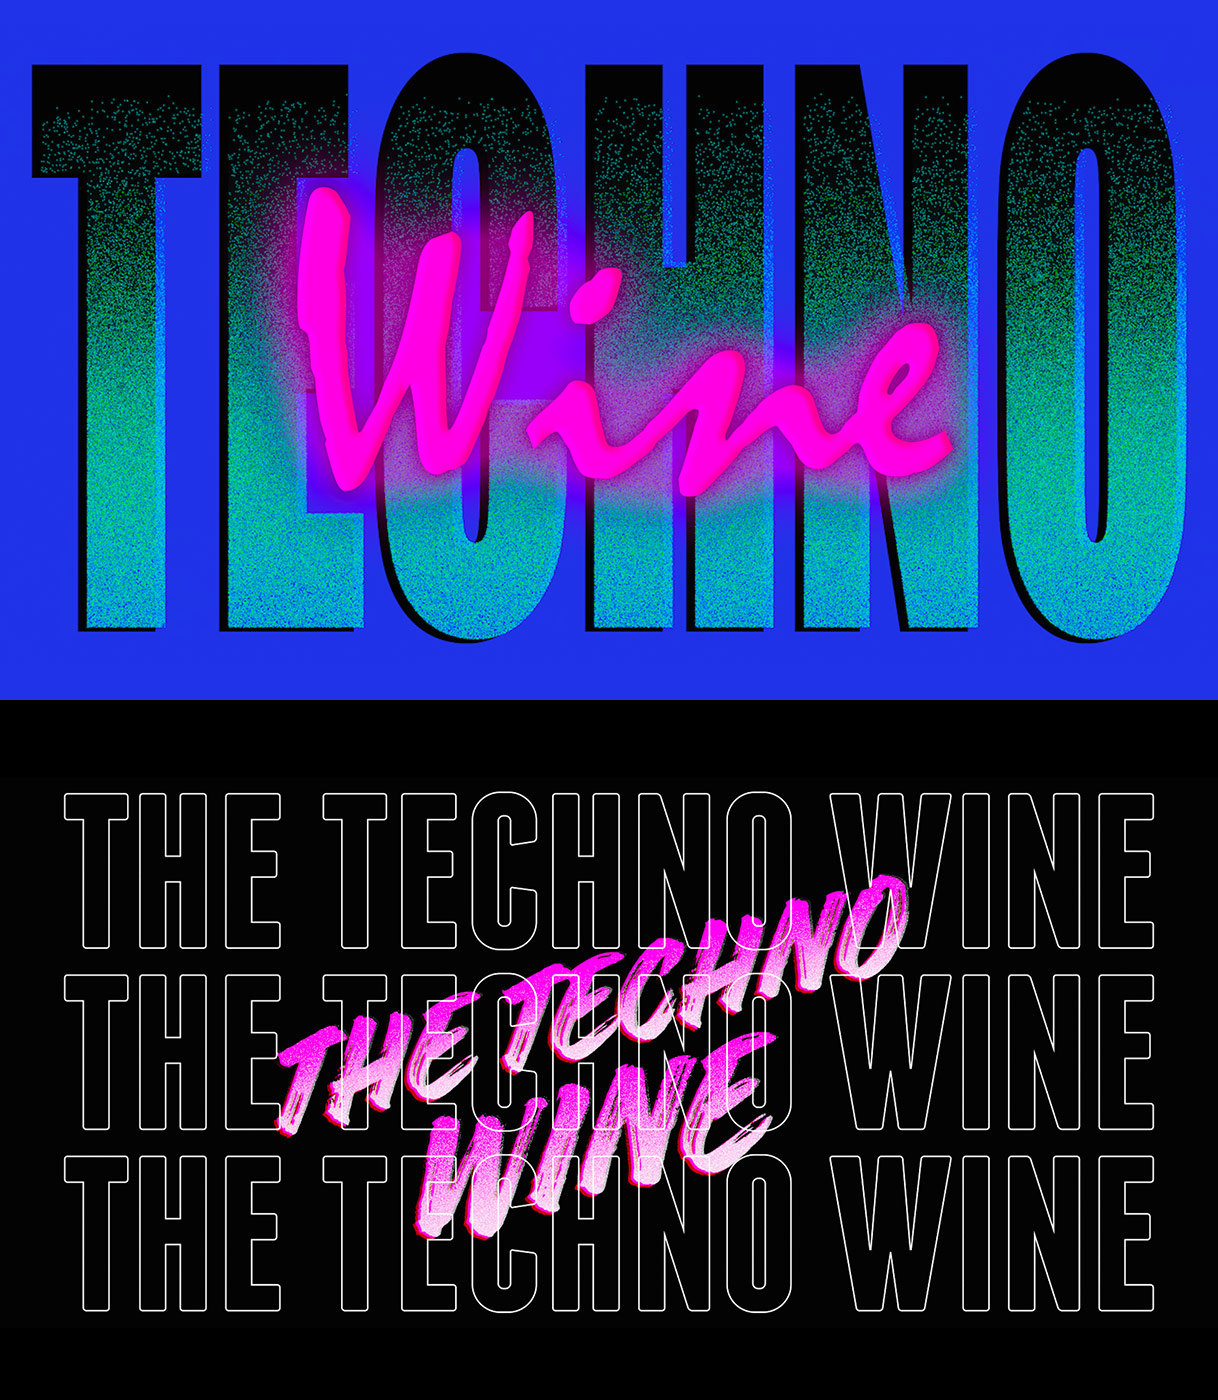 Identidad visual con el texto Techno Wine